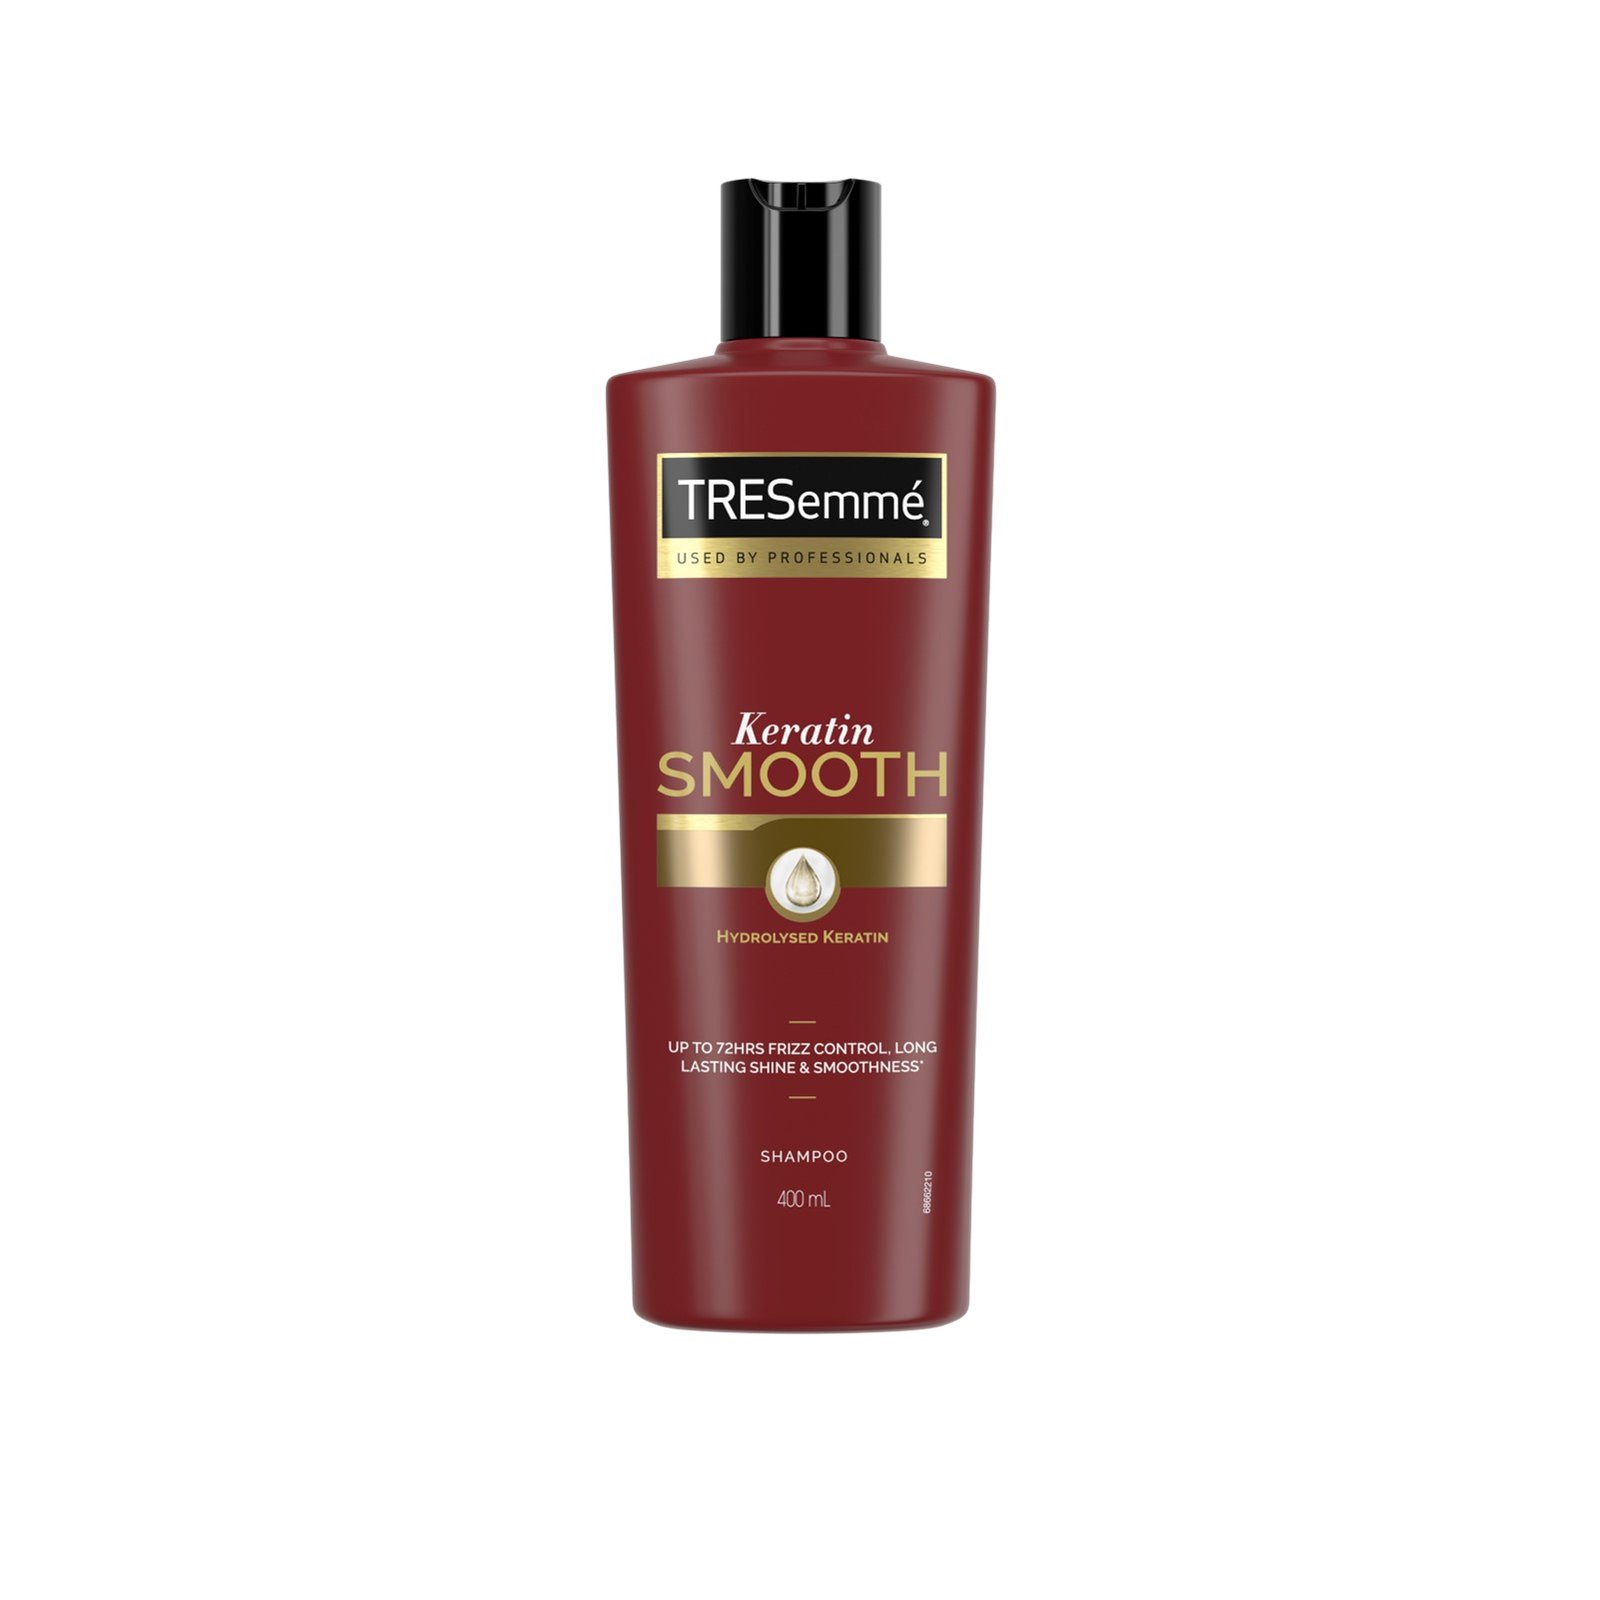 TRESemmé Keratin Smooth Shampoo 400ml (13.5 fl oz)